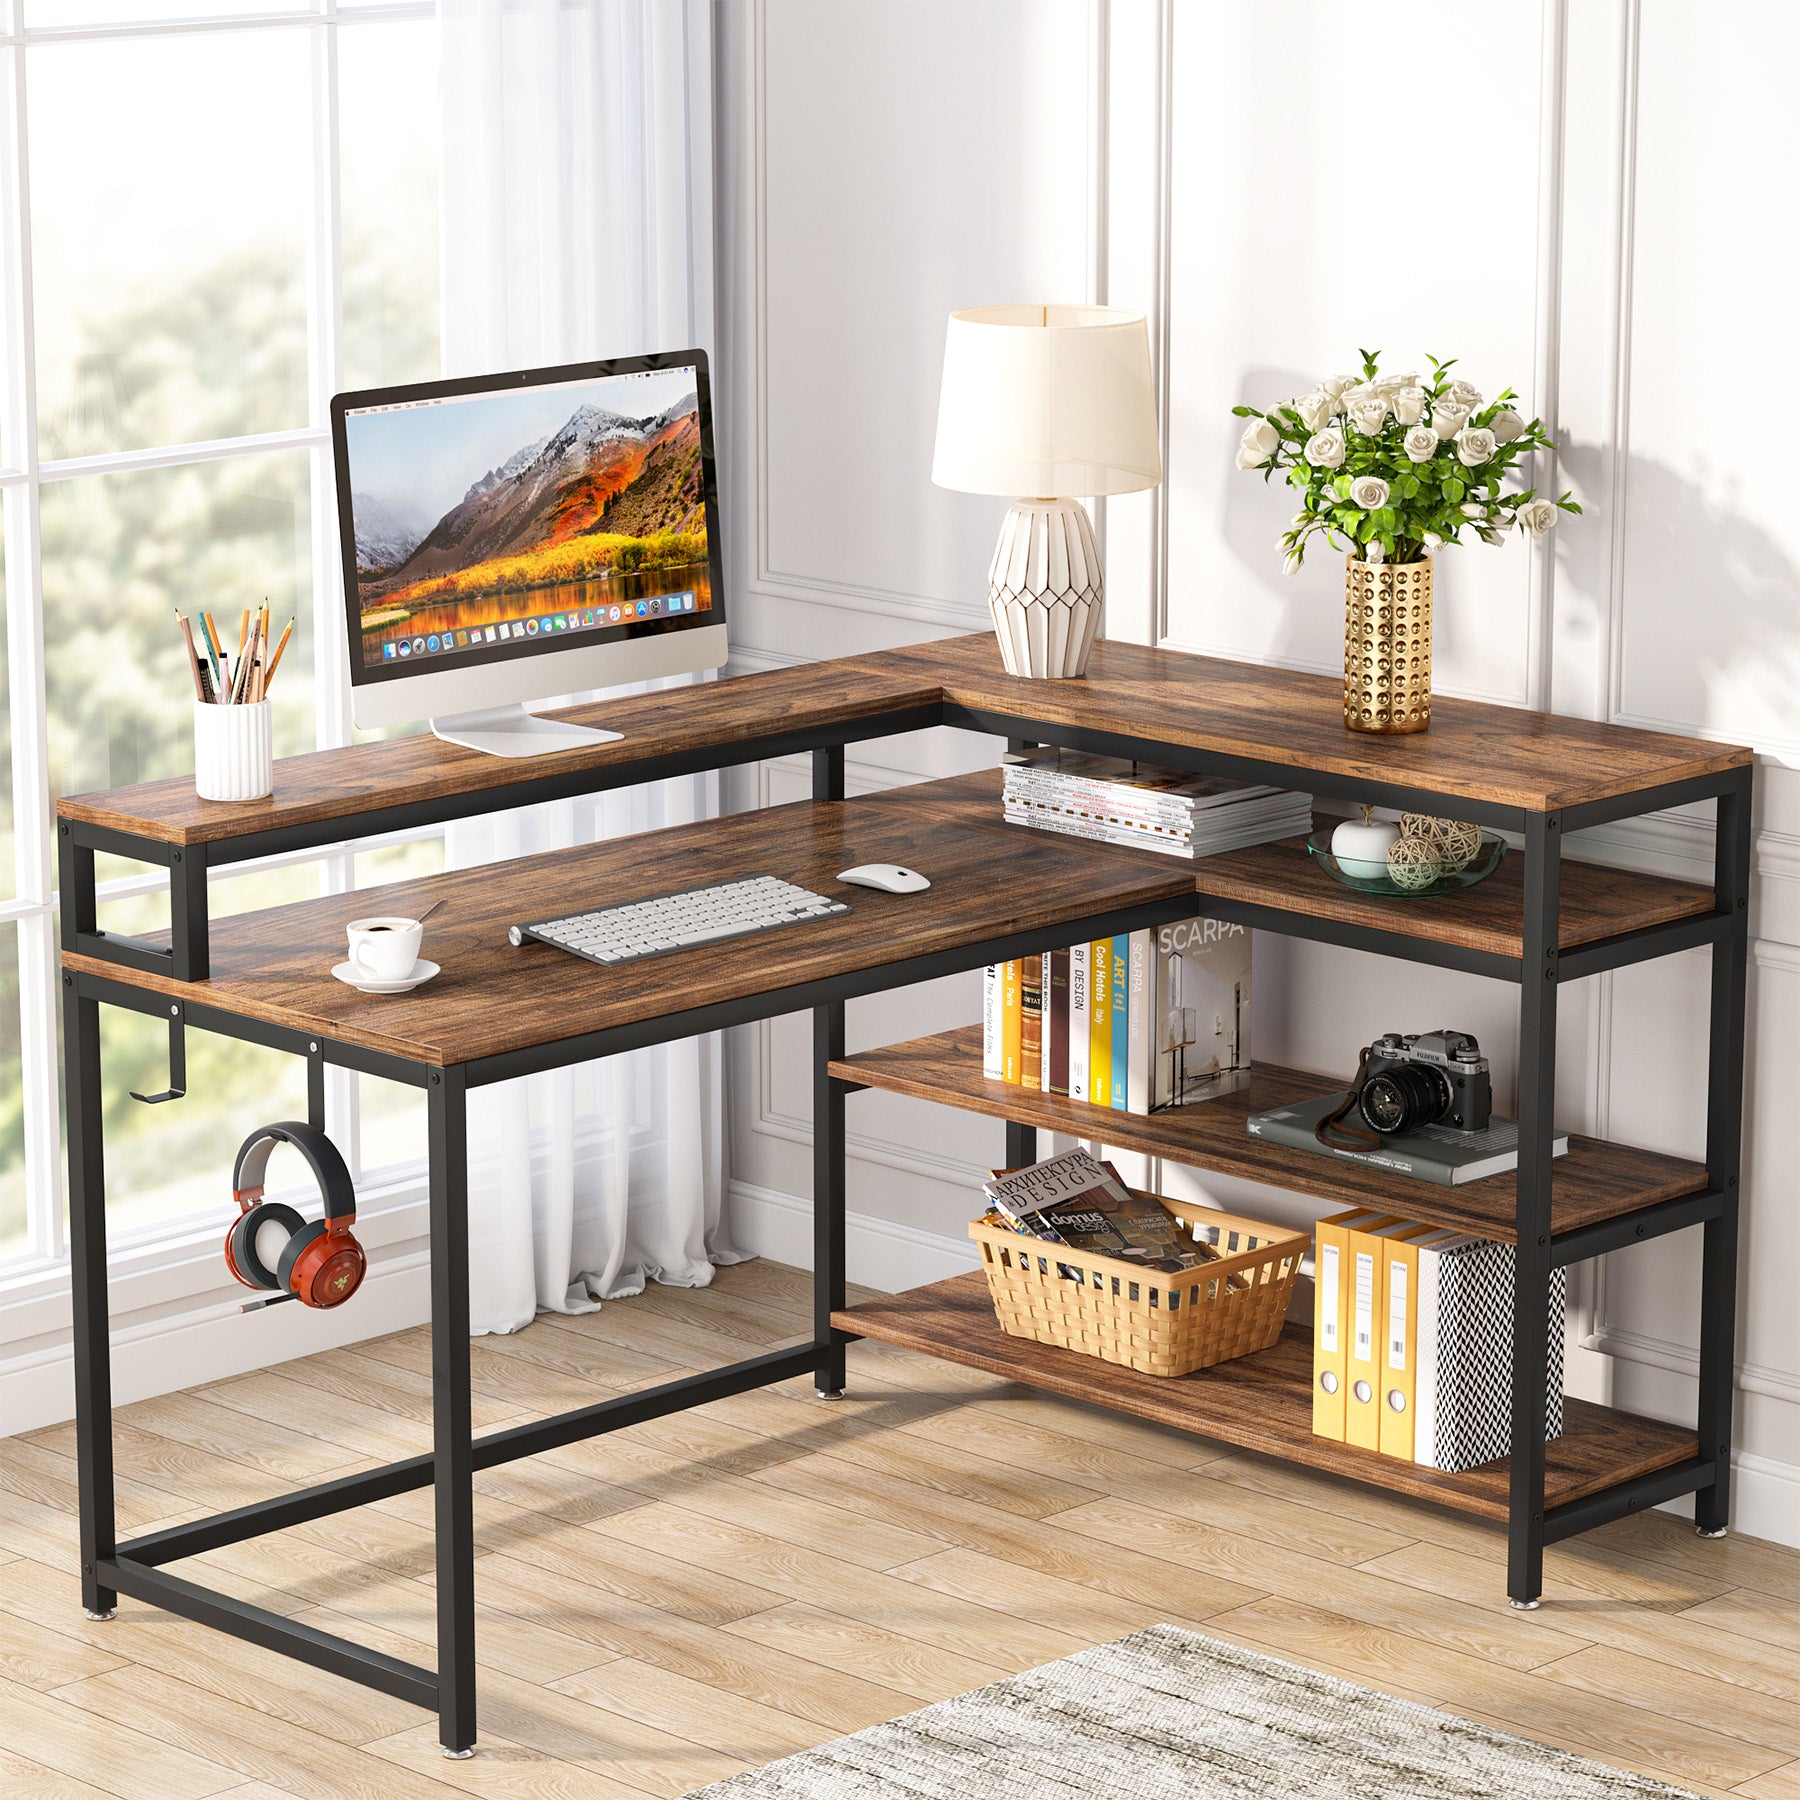 69 Inch L Shaped Desk with Storage Shelf